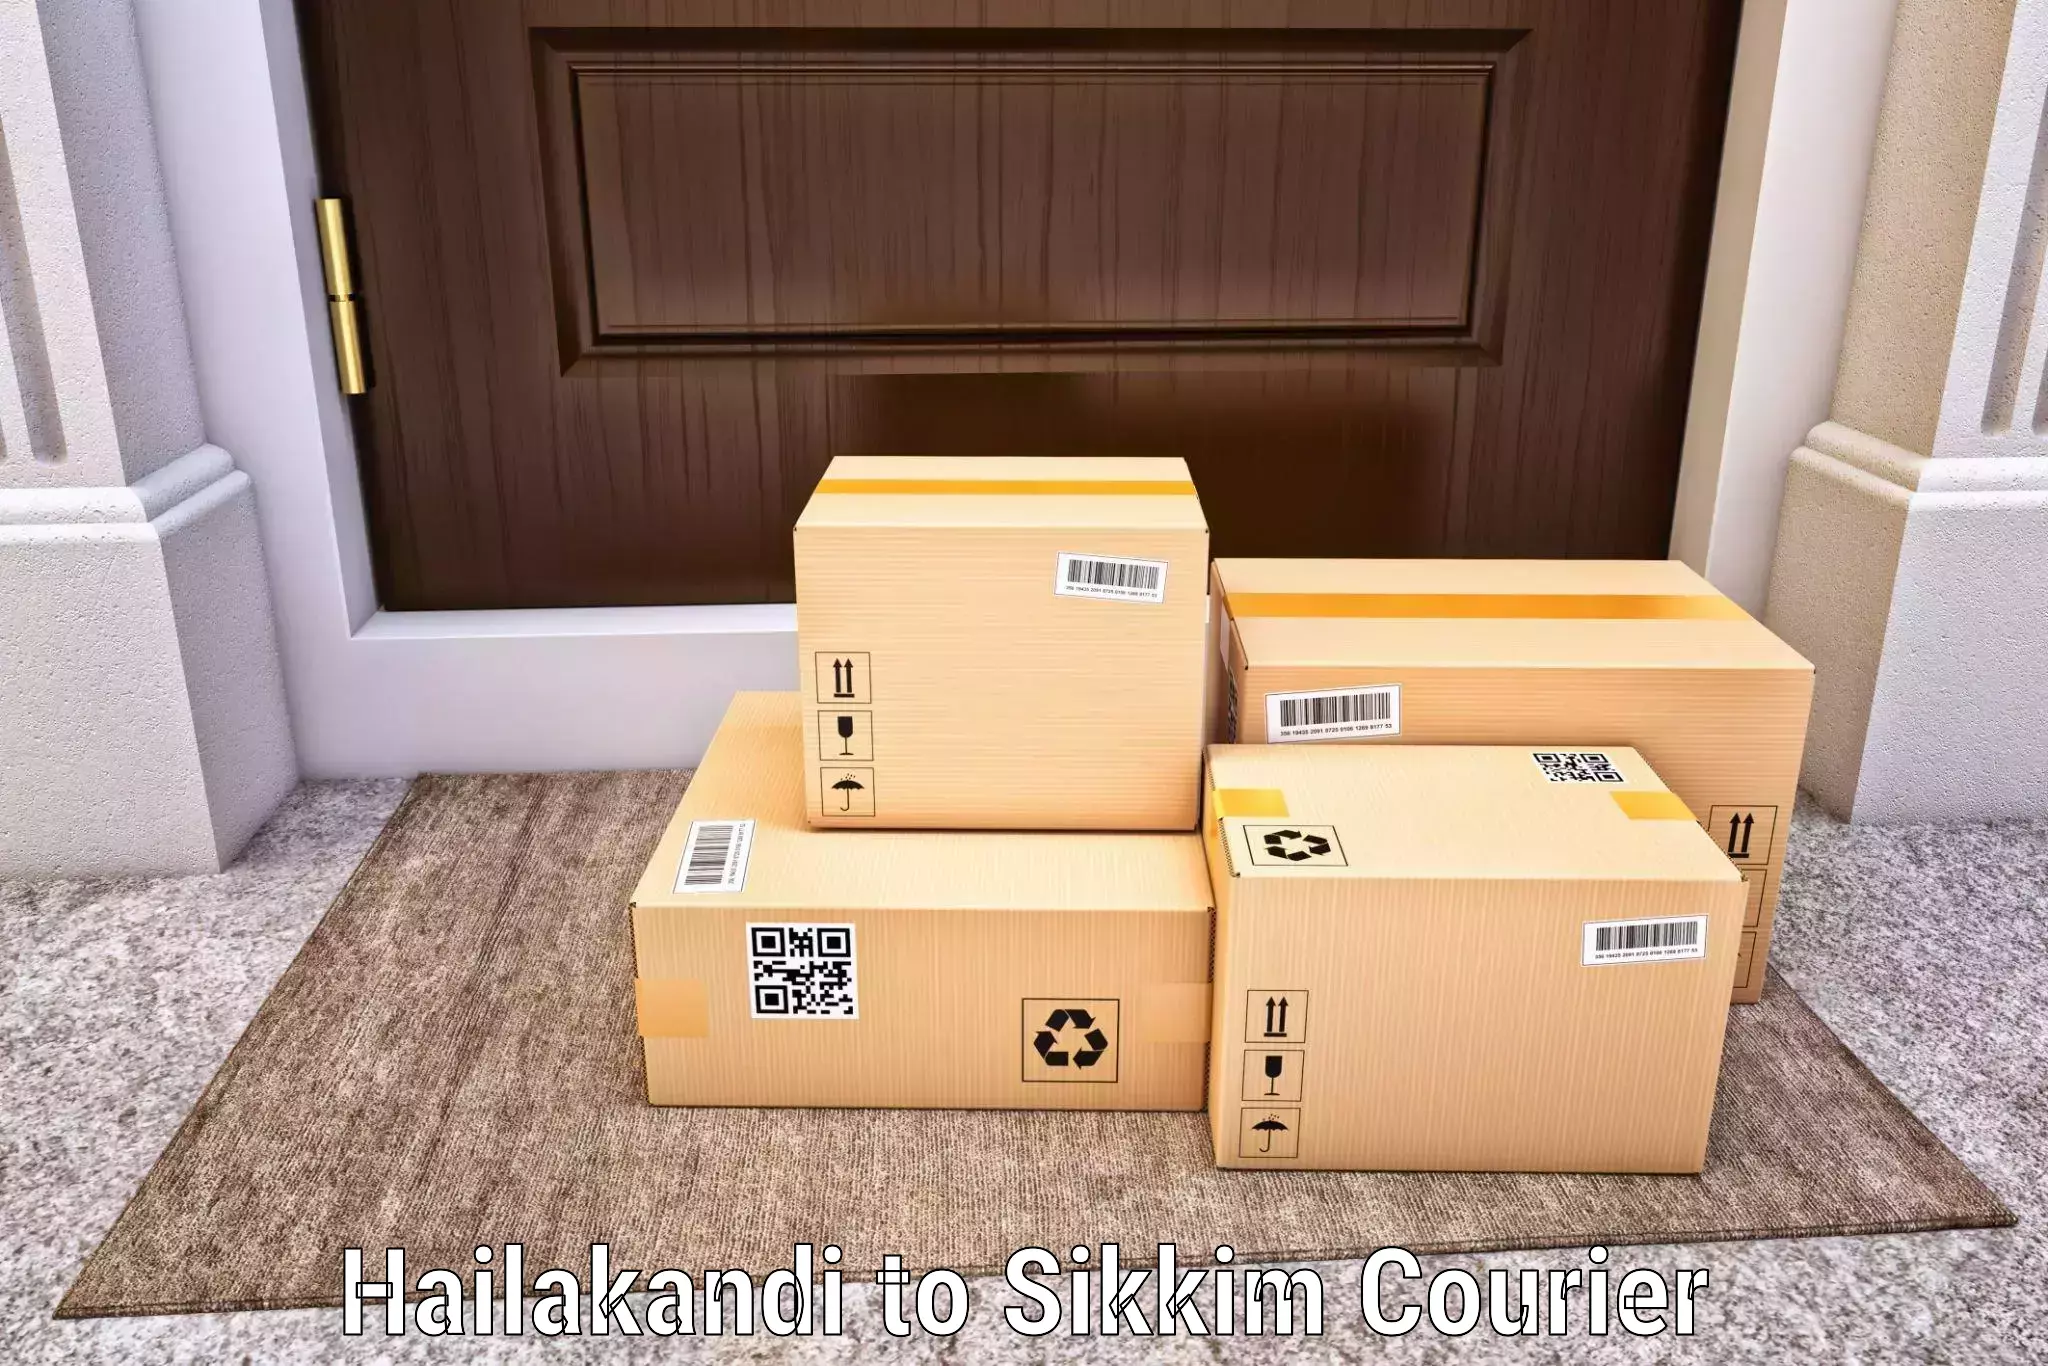 Seamless shipping experience in Hailakandi to Rangpo